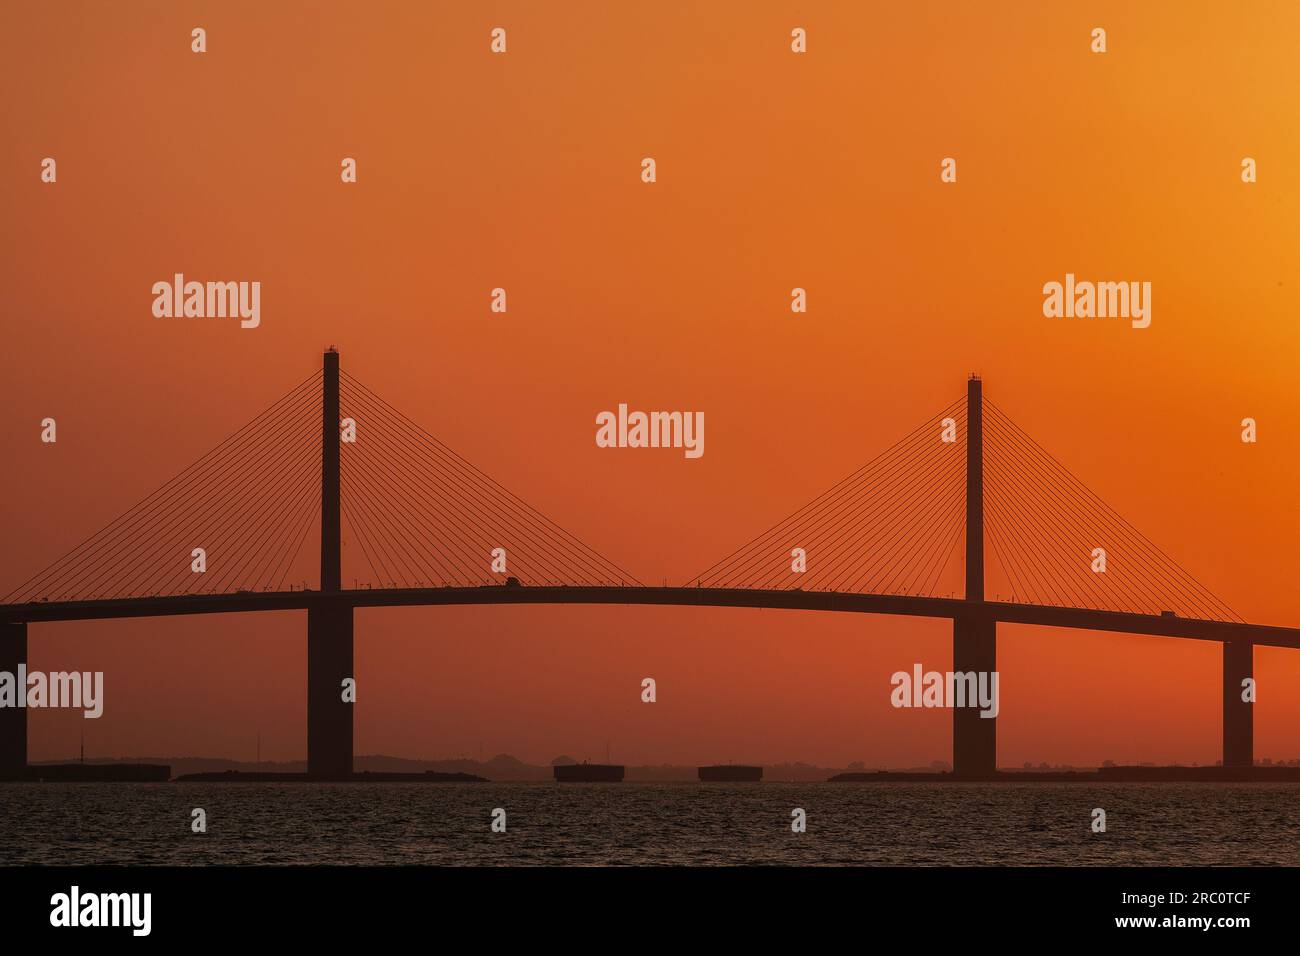 The skyway bridge at sunset, Tampa, Florida Stock Photo